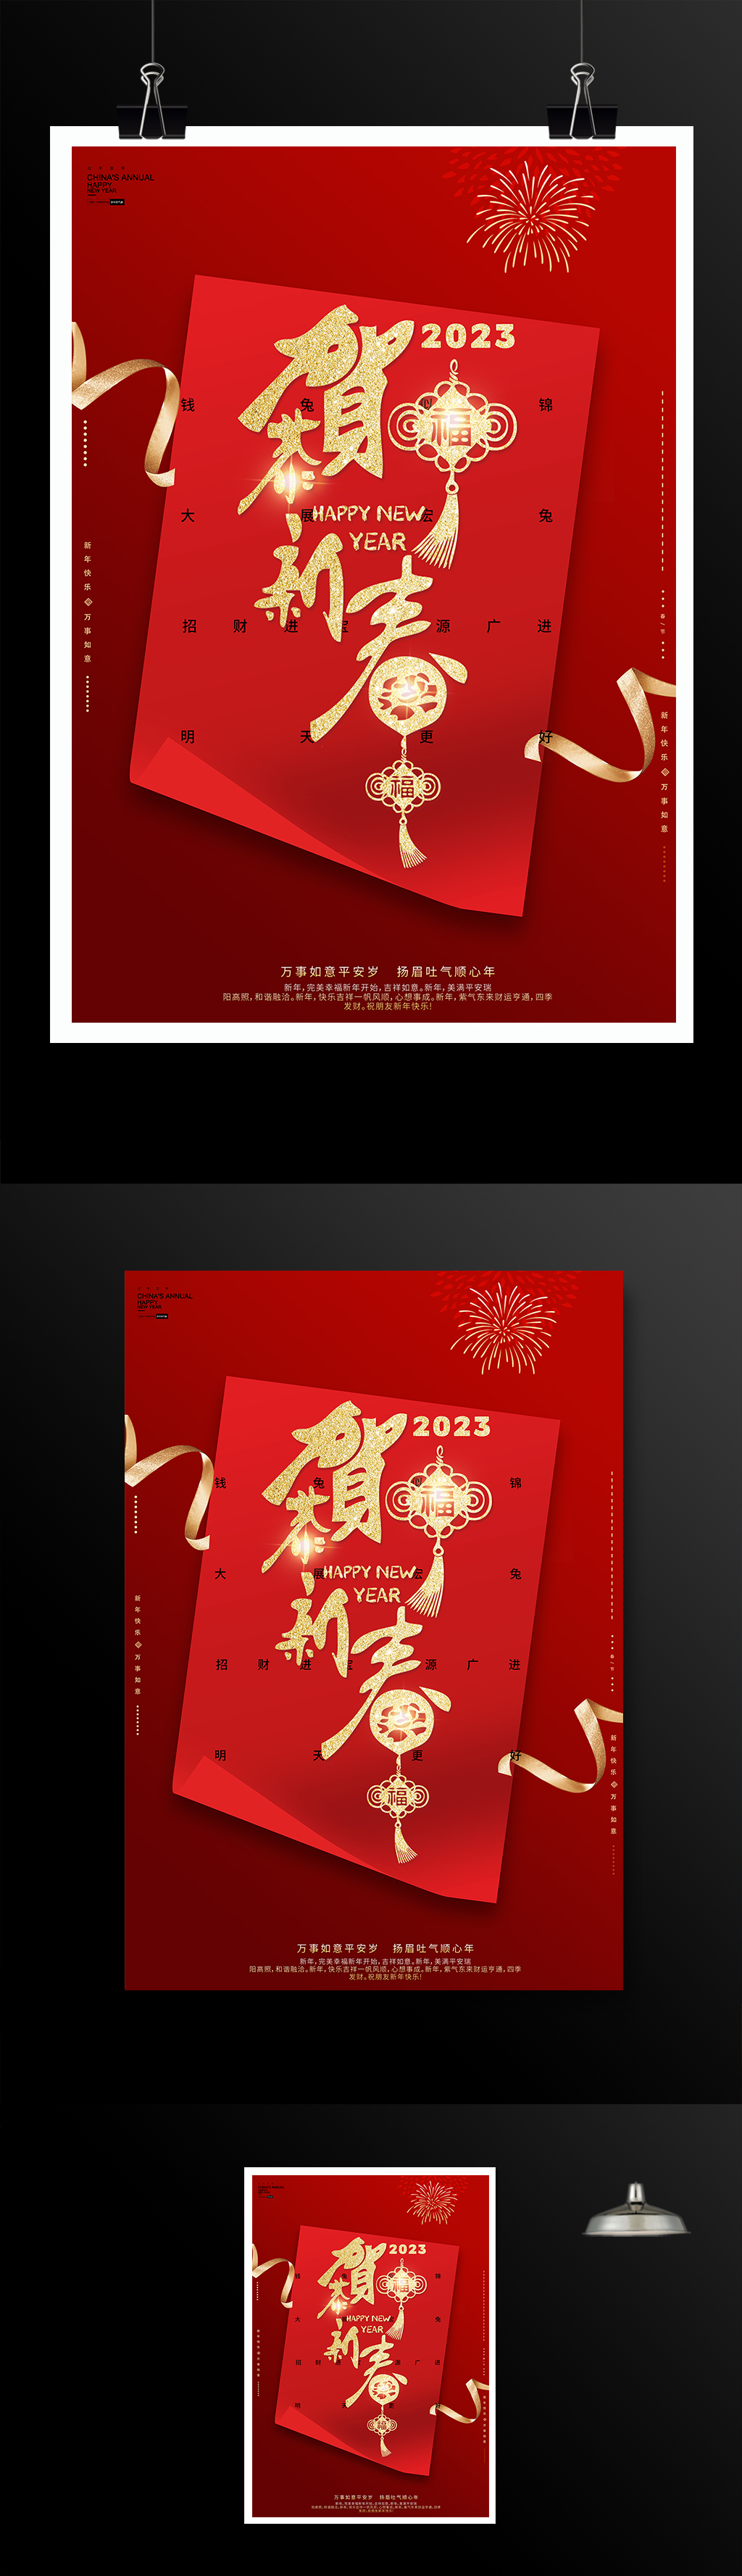 红色喜庆贺新春宣传海报